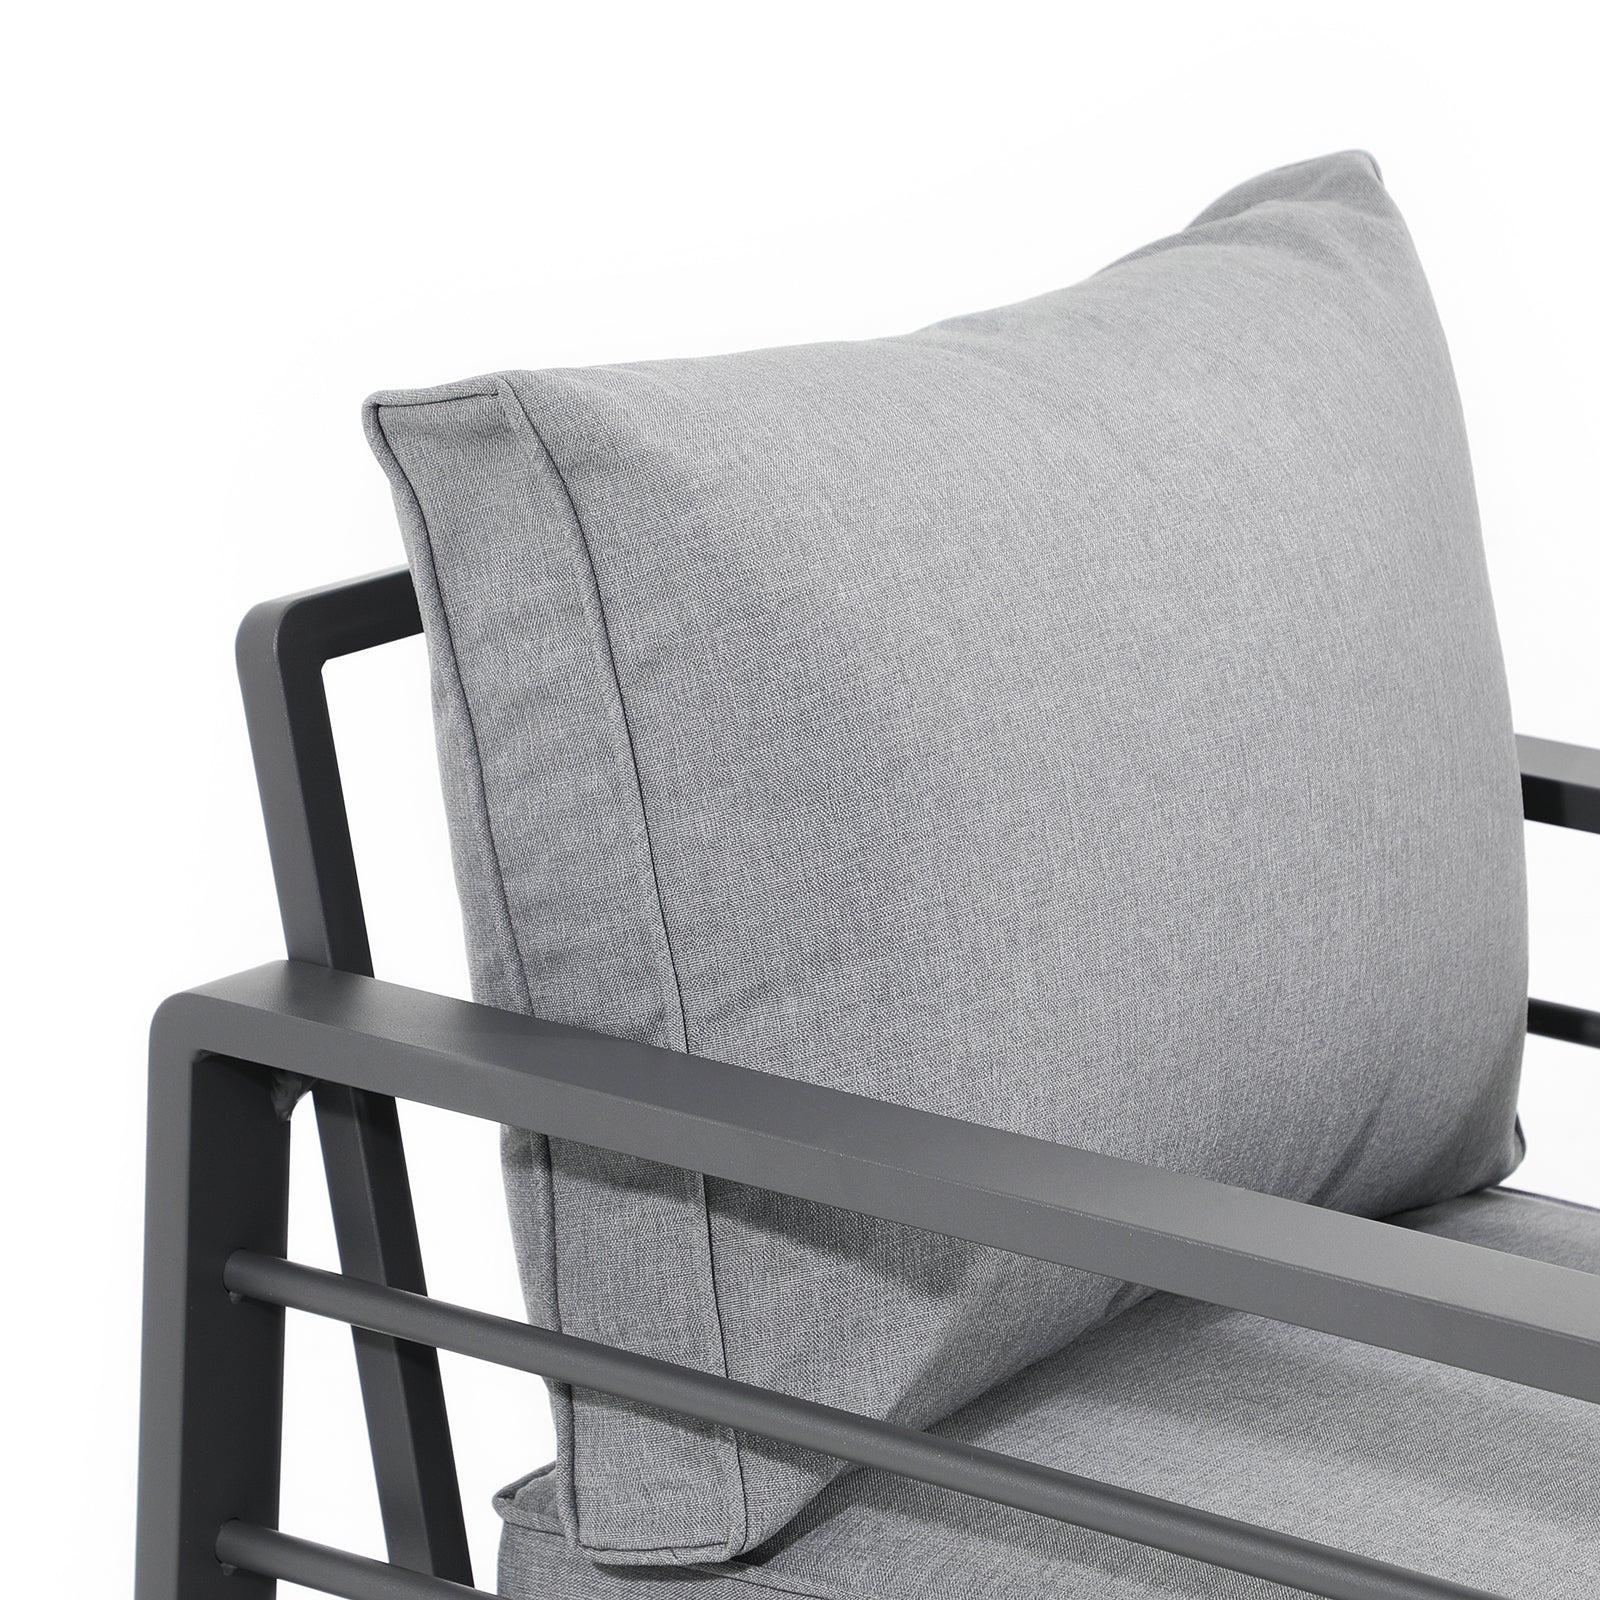 Salina grey outdoor arm chair sofa with aluminum frame, grey cushions, cushion detail - Jardina Furniture - 1